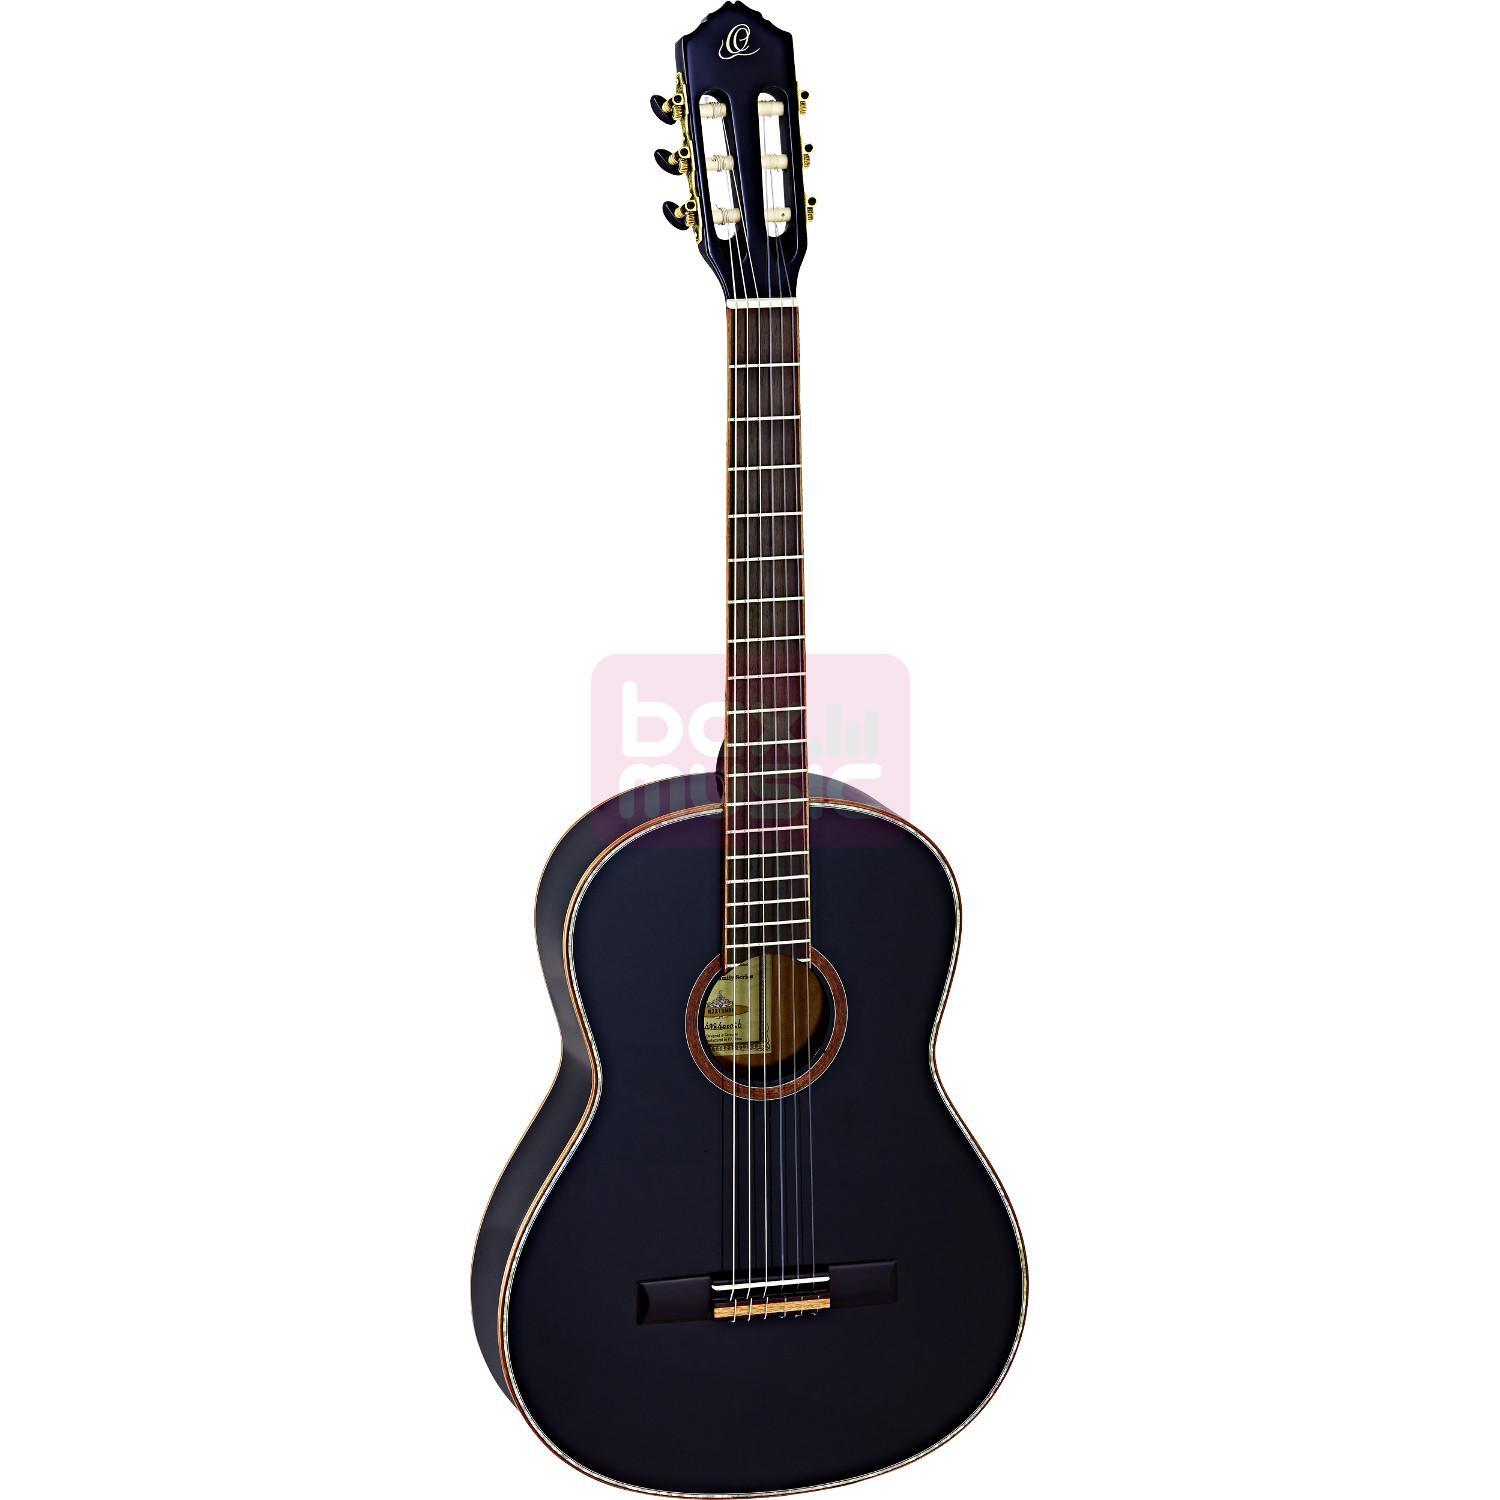 Ortega Family Series R 221 SNBK klassieke gitaar zwart met gigbag